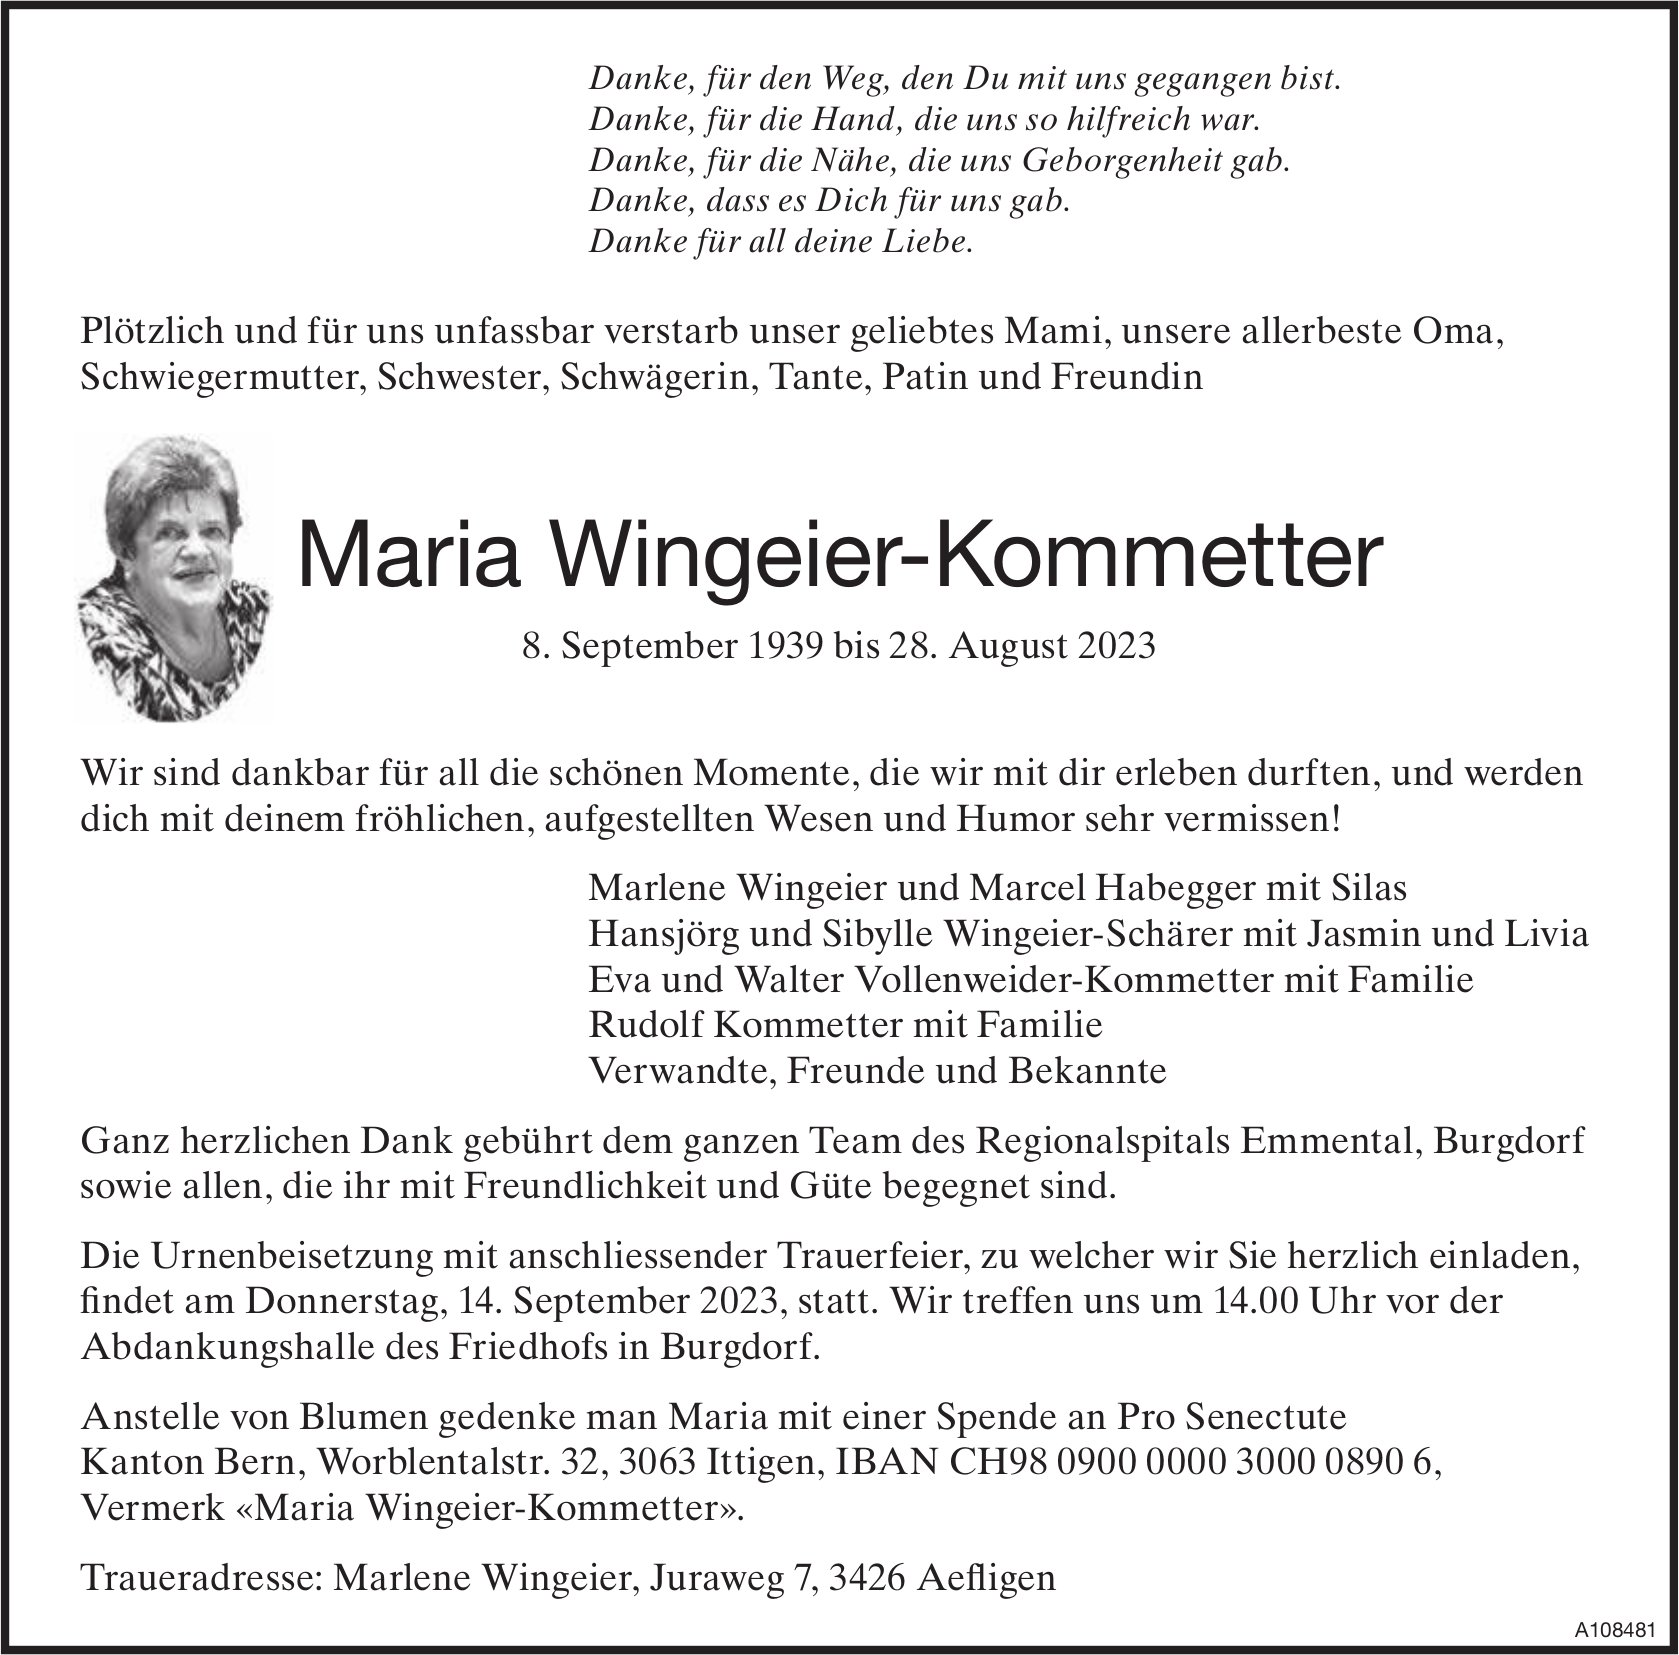 Maria Wingeier-Kommetter, August 2023 / TA